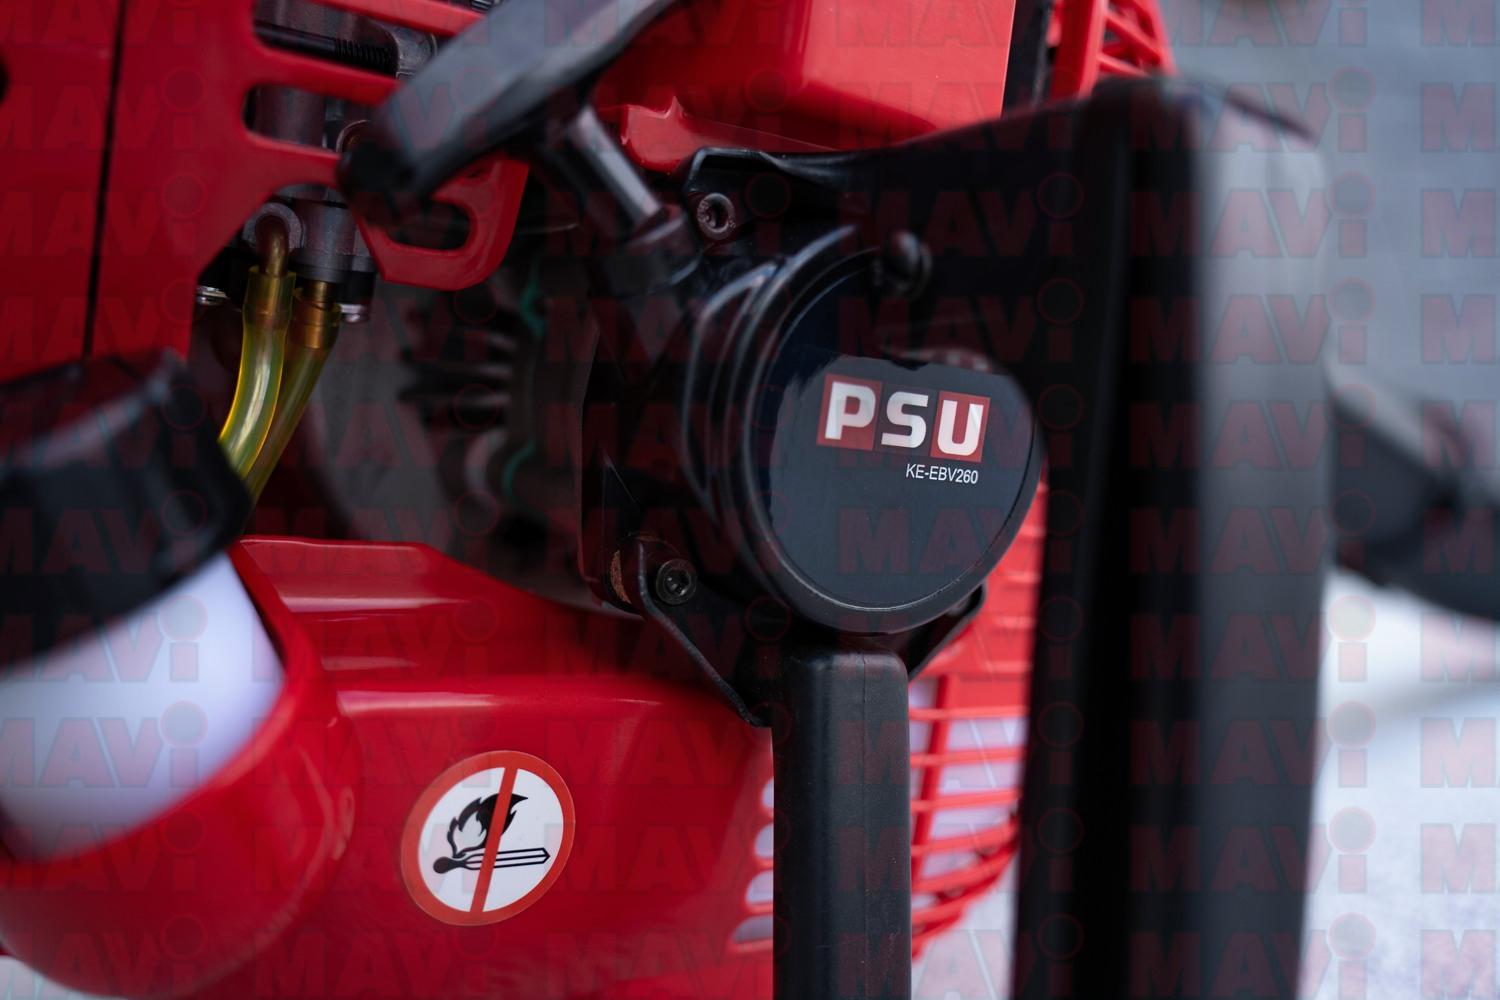 Suflantă/aspirator frunze PSU # KE-EBV260, 25.4 CC, 0.75 kW, motor pe benzină